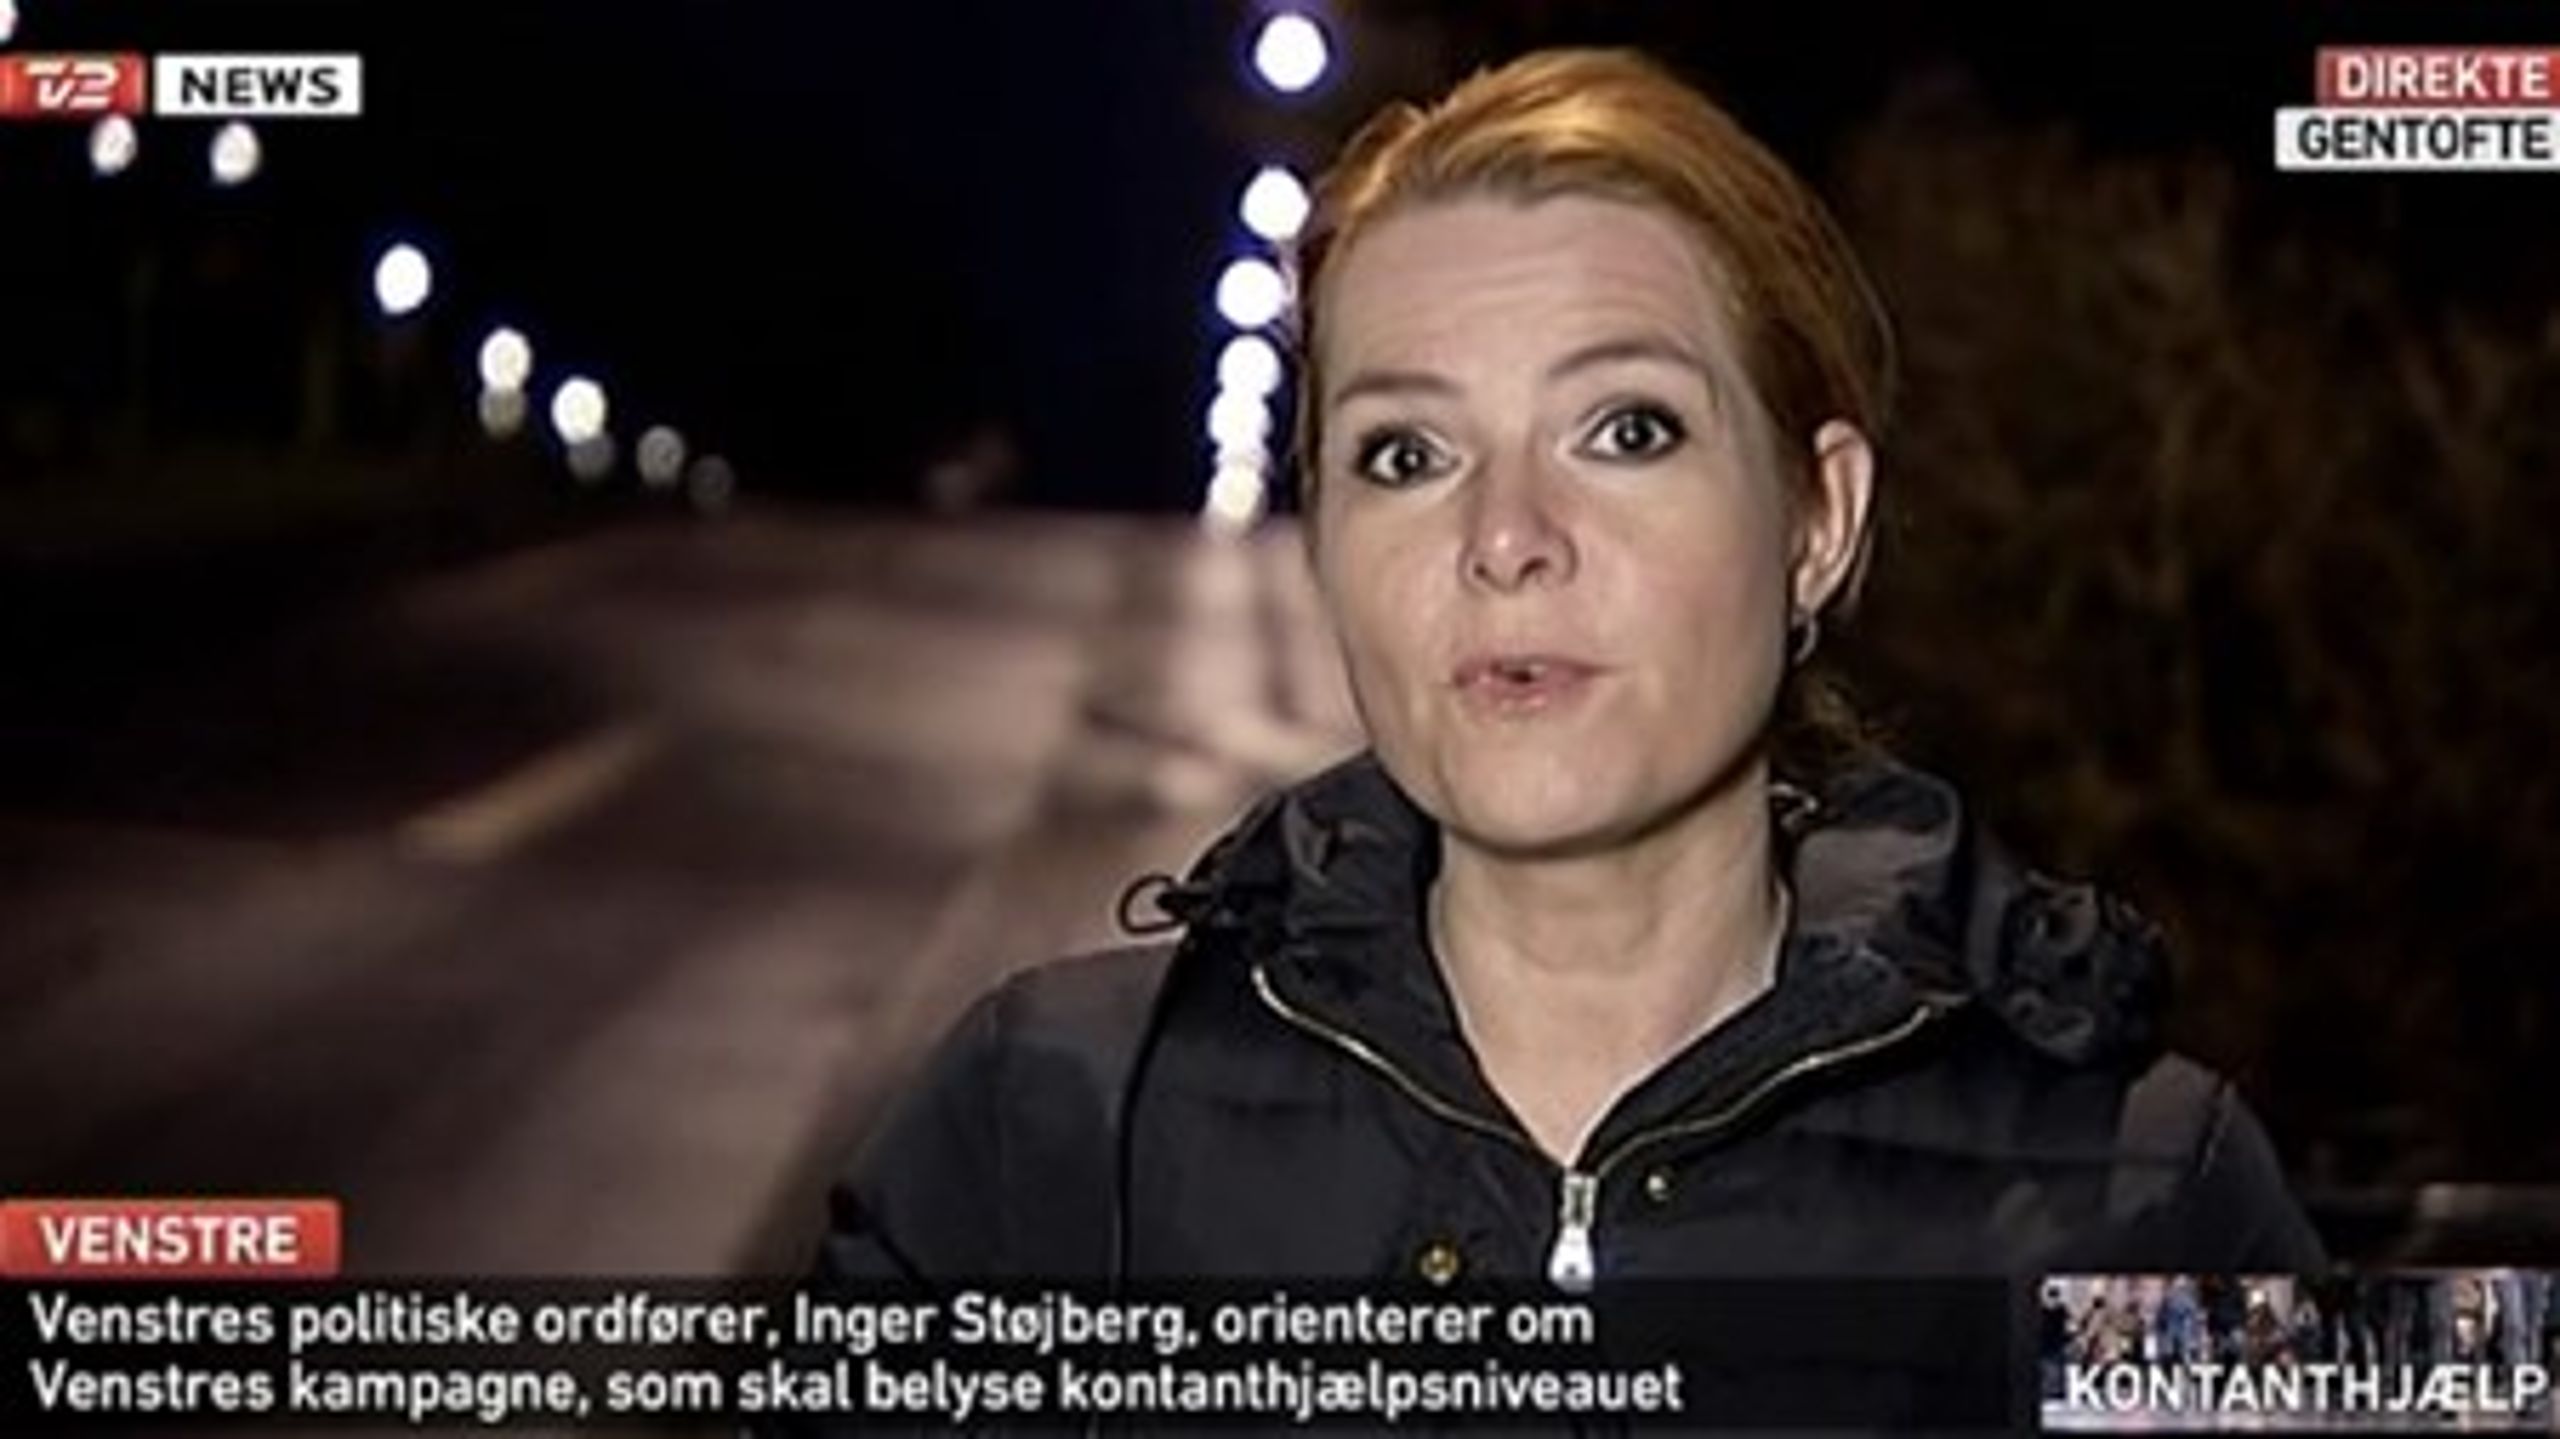 Venstres politiske ordfører Inger Støjberg fremlægger partiets nye kampagne på&nbsp;TV 2 News mandag morgen.&nbsp;